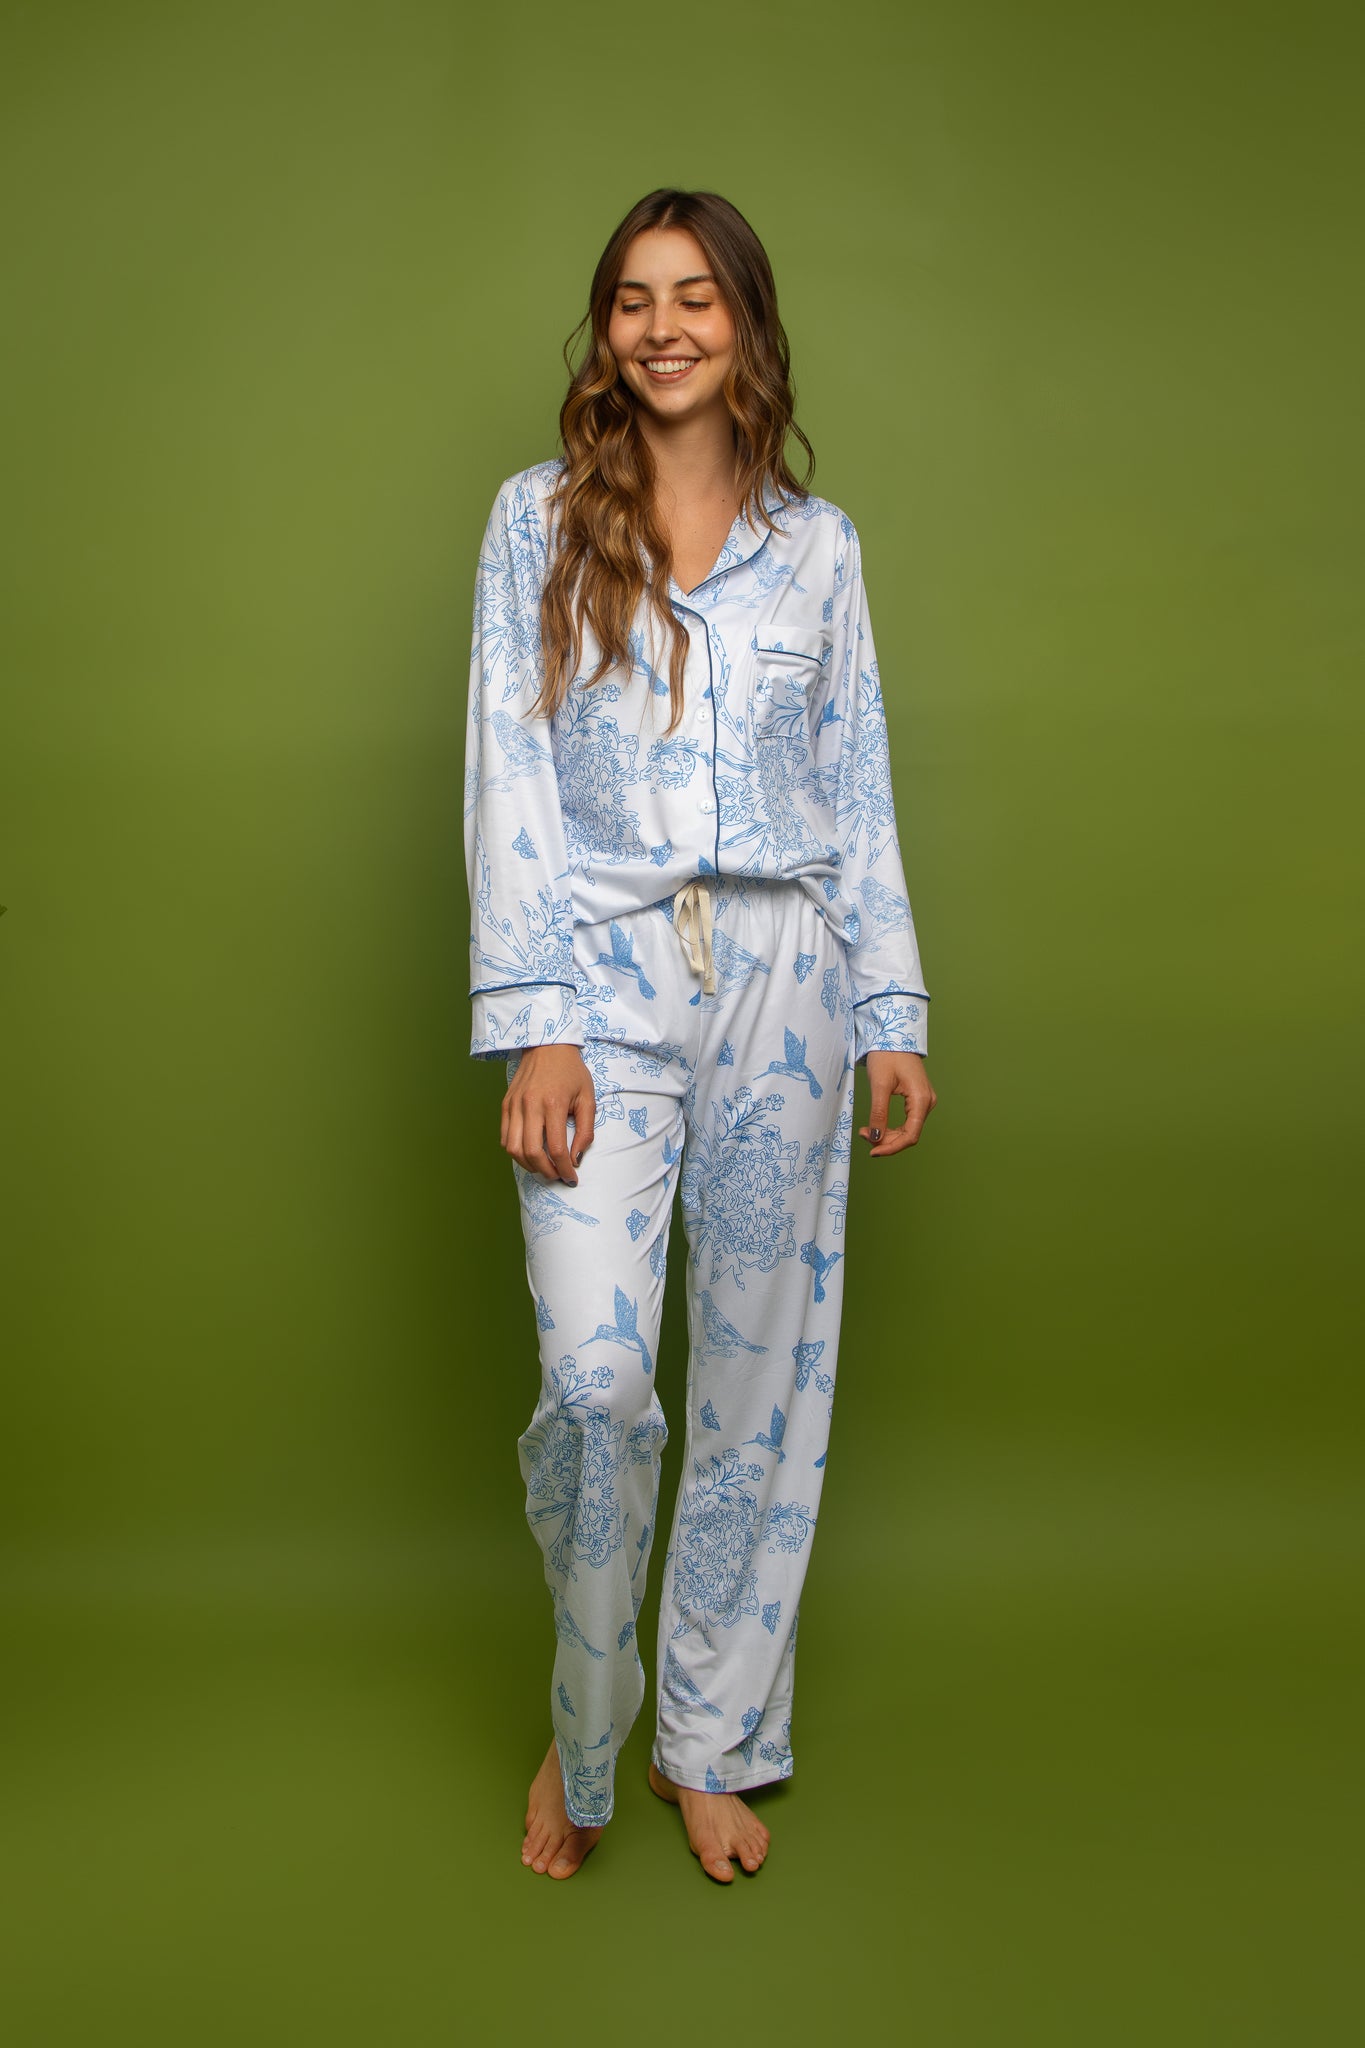 Pijama Madrugadas en Vivoral Celeste